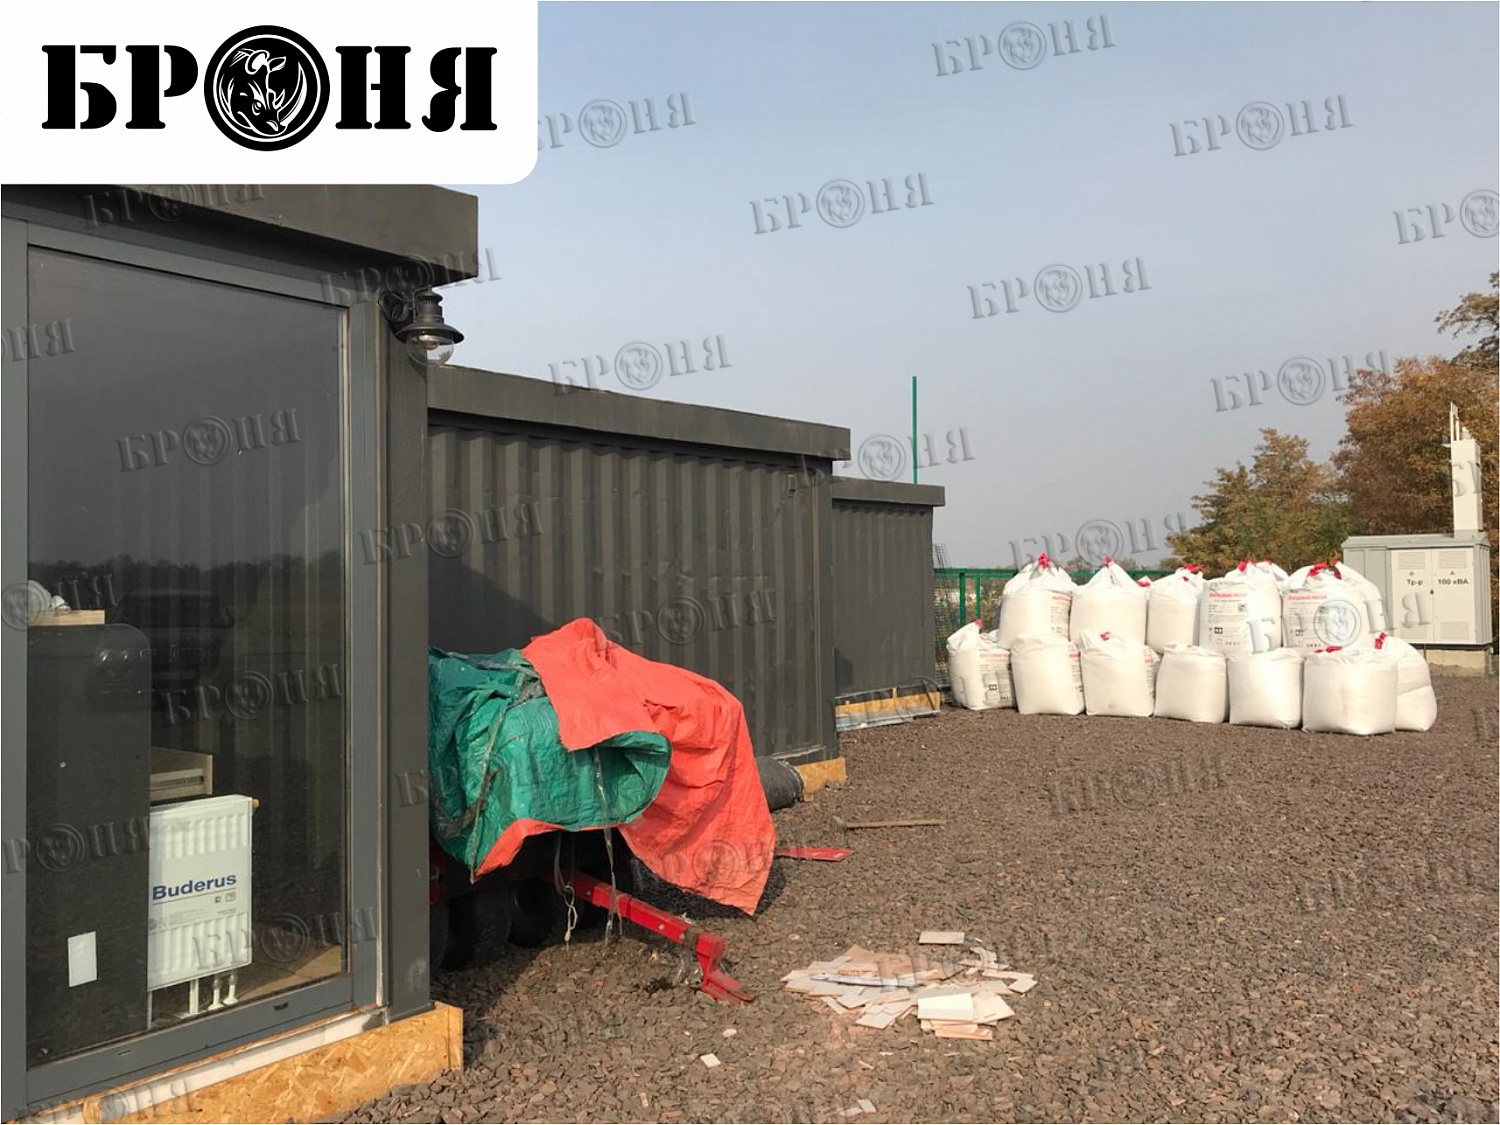 Теплоизоляция Броня при утеплении контейнеров, используемых в качестве зоны обслуживания Футбольного клуба в Ростовской области